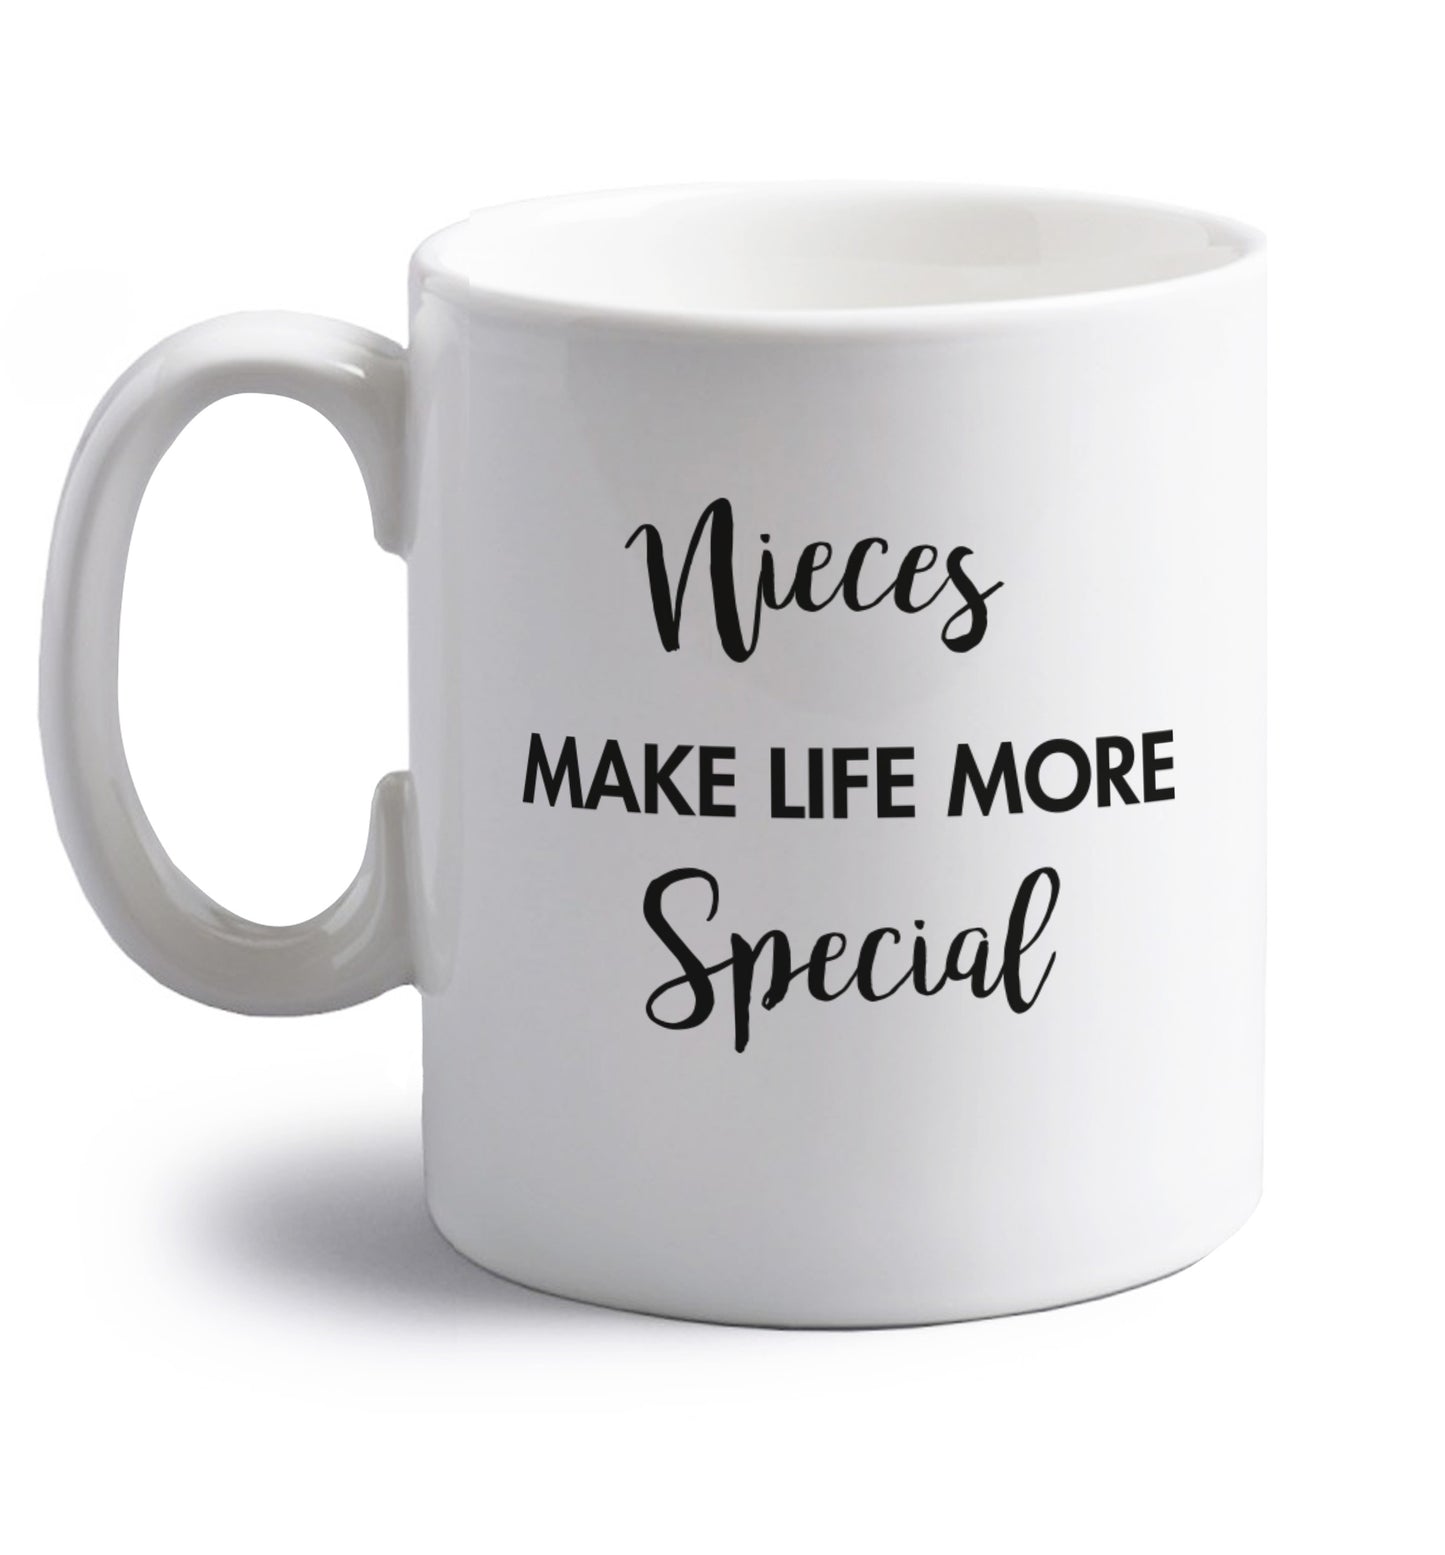 Nieces make life more special right handed white ceramic mug 